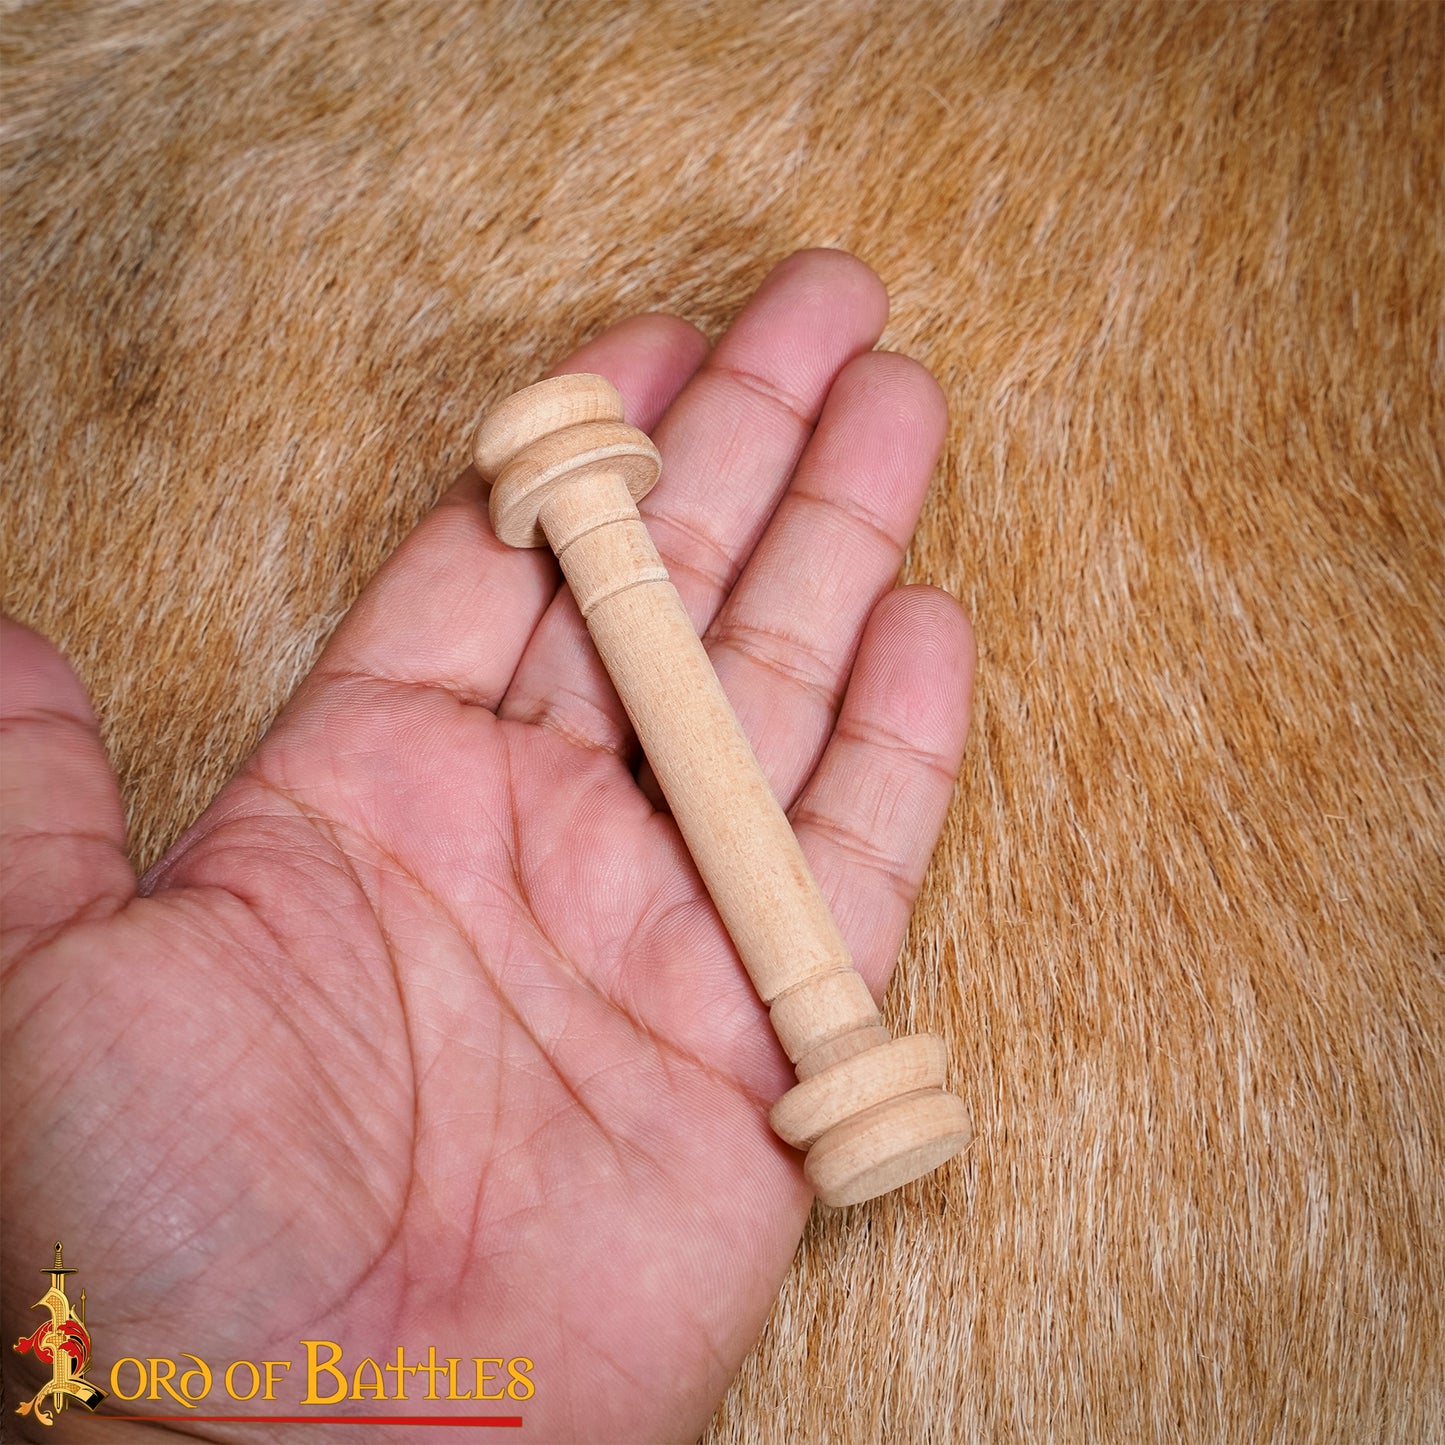 Large Wooden Spools - Thread Reels, Bobbins (set of 2)